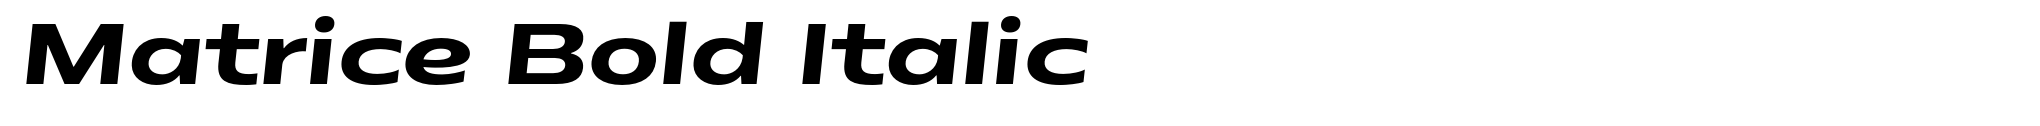 Matrice Bold Italic image